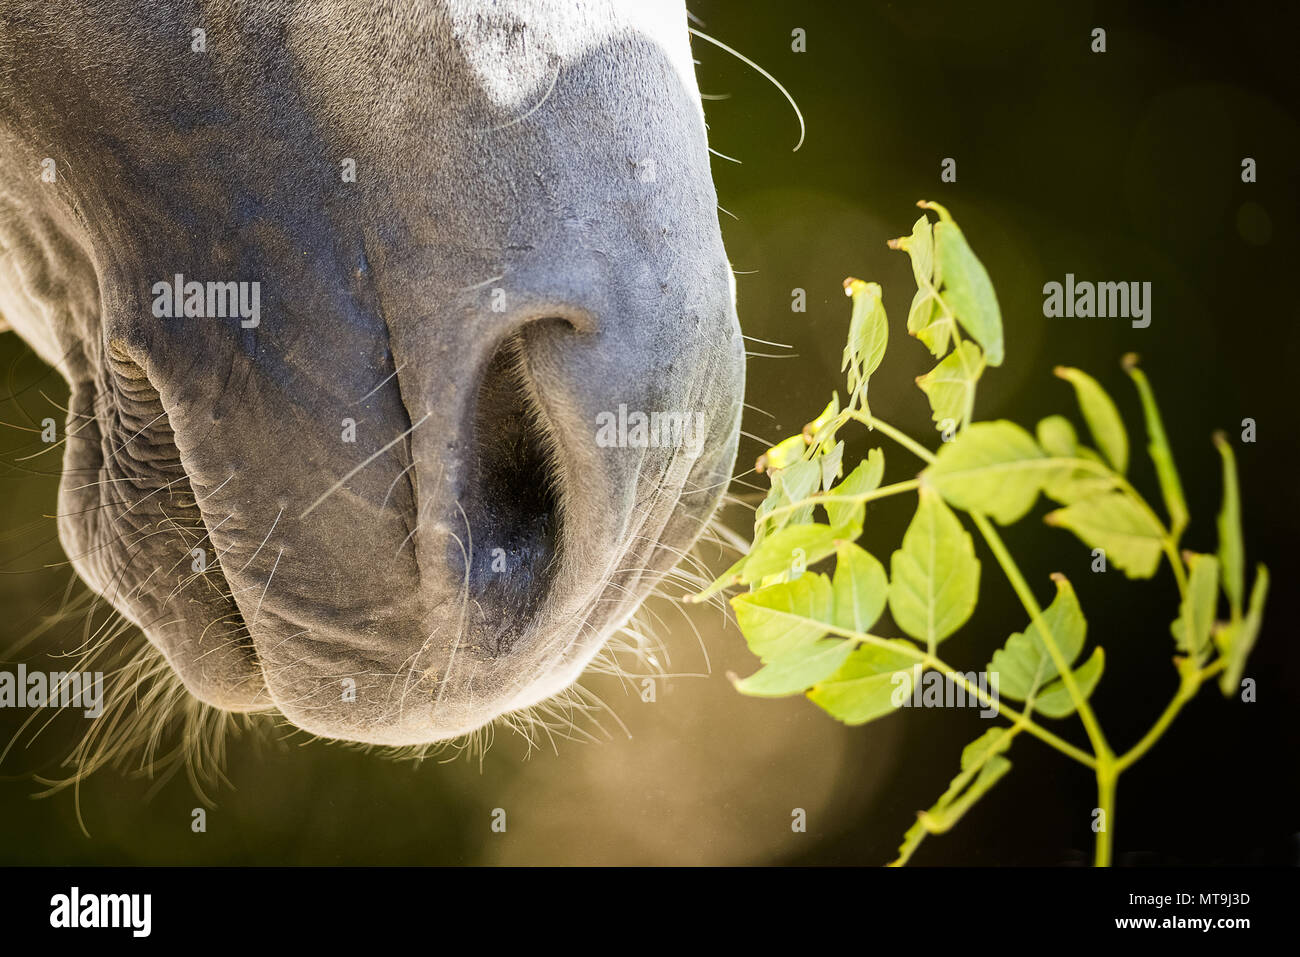 Arabische Pferd. In der Nähe von Nase und Mund af ein graues Pferd. Abu Dhabi Stockfoto